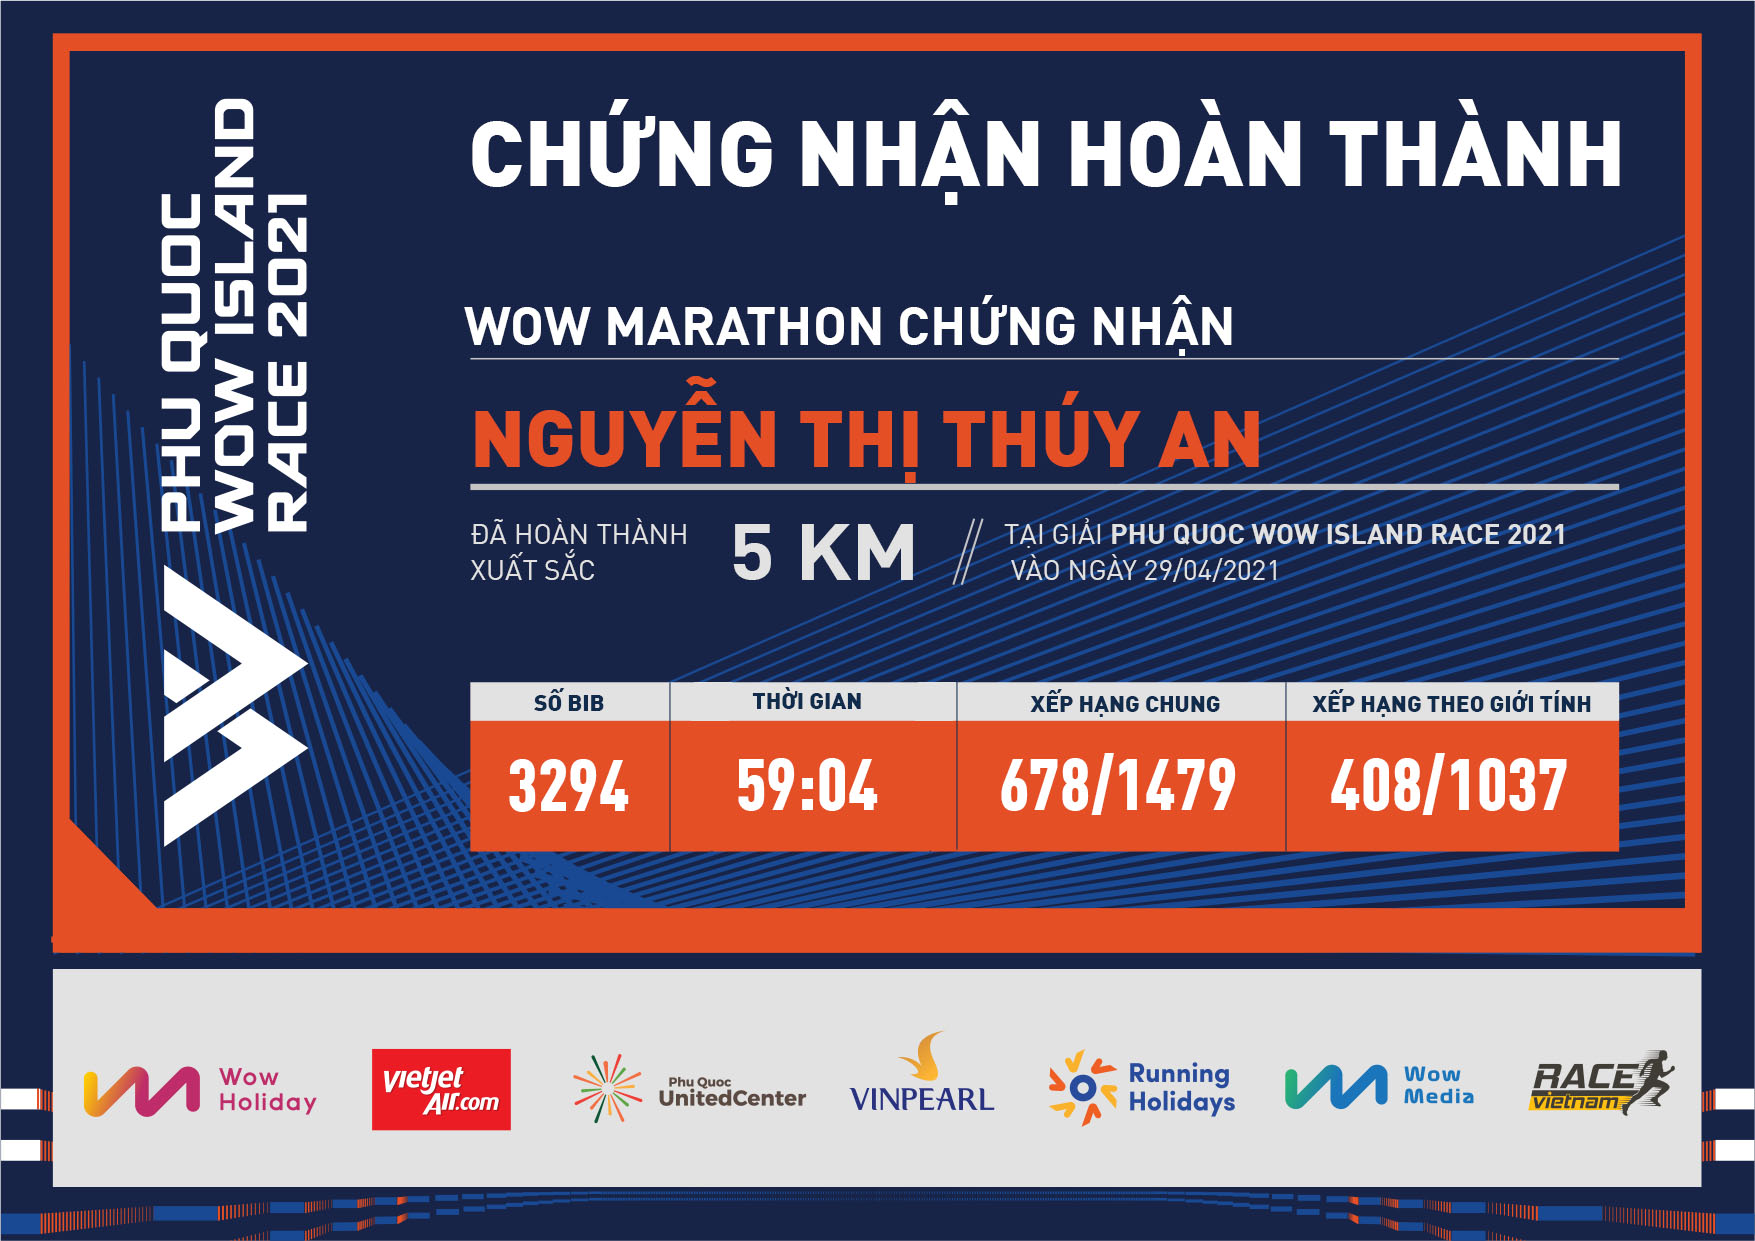 3294 - Nguyễn Thị Thúy An